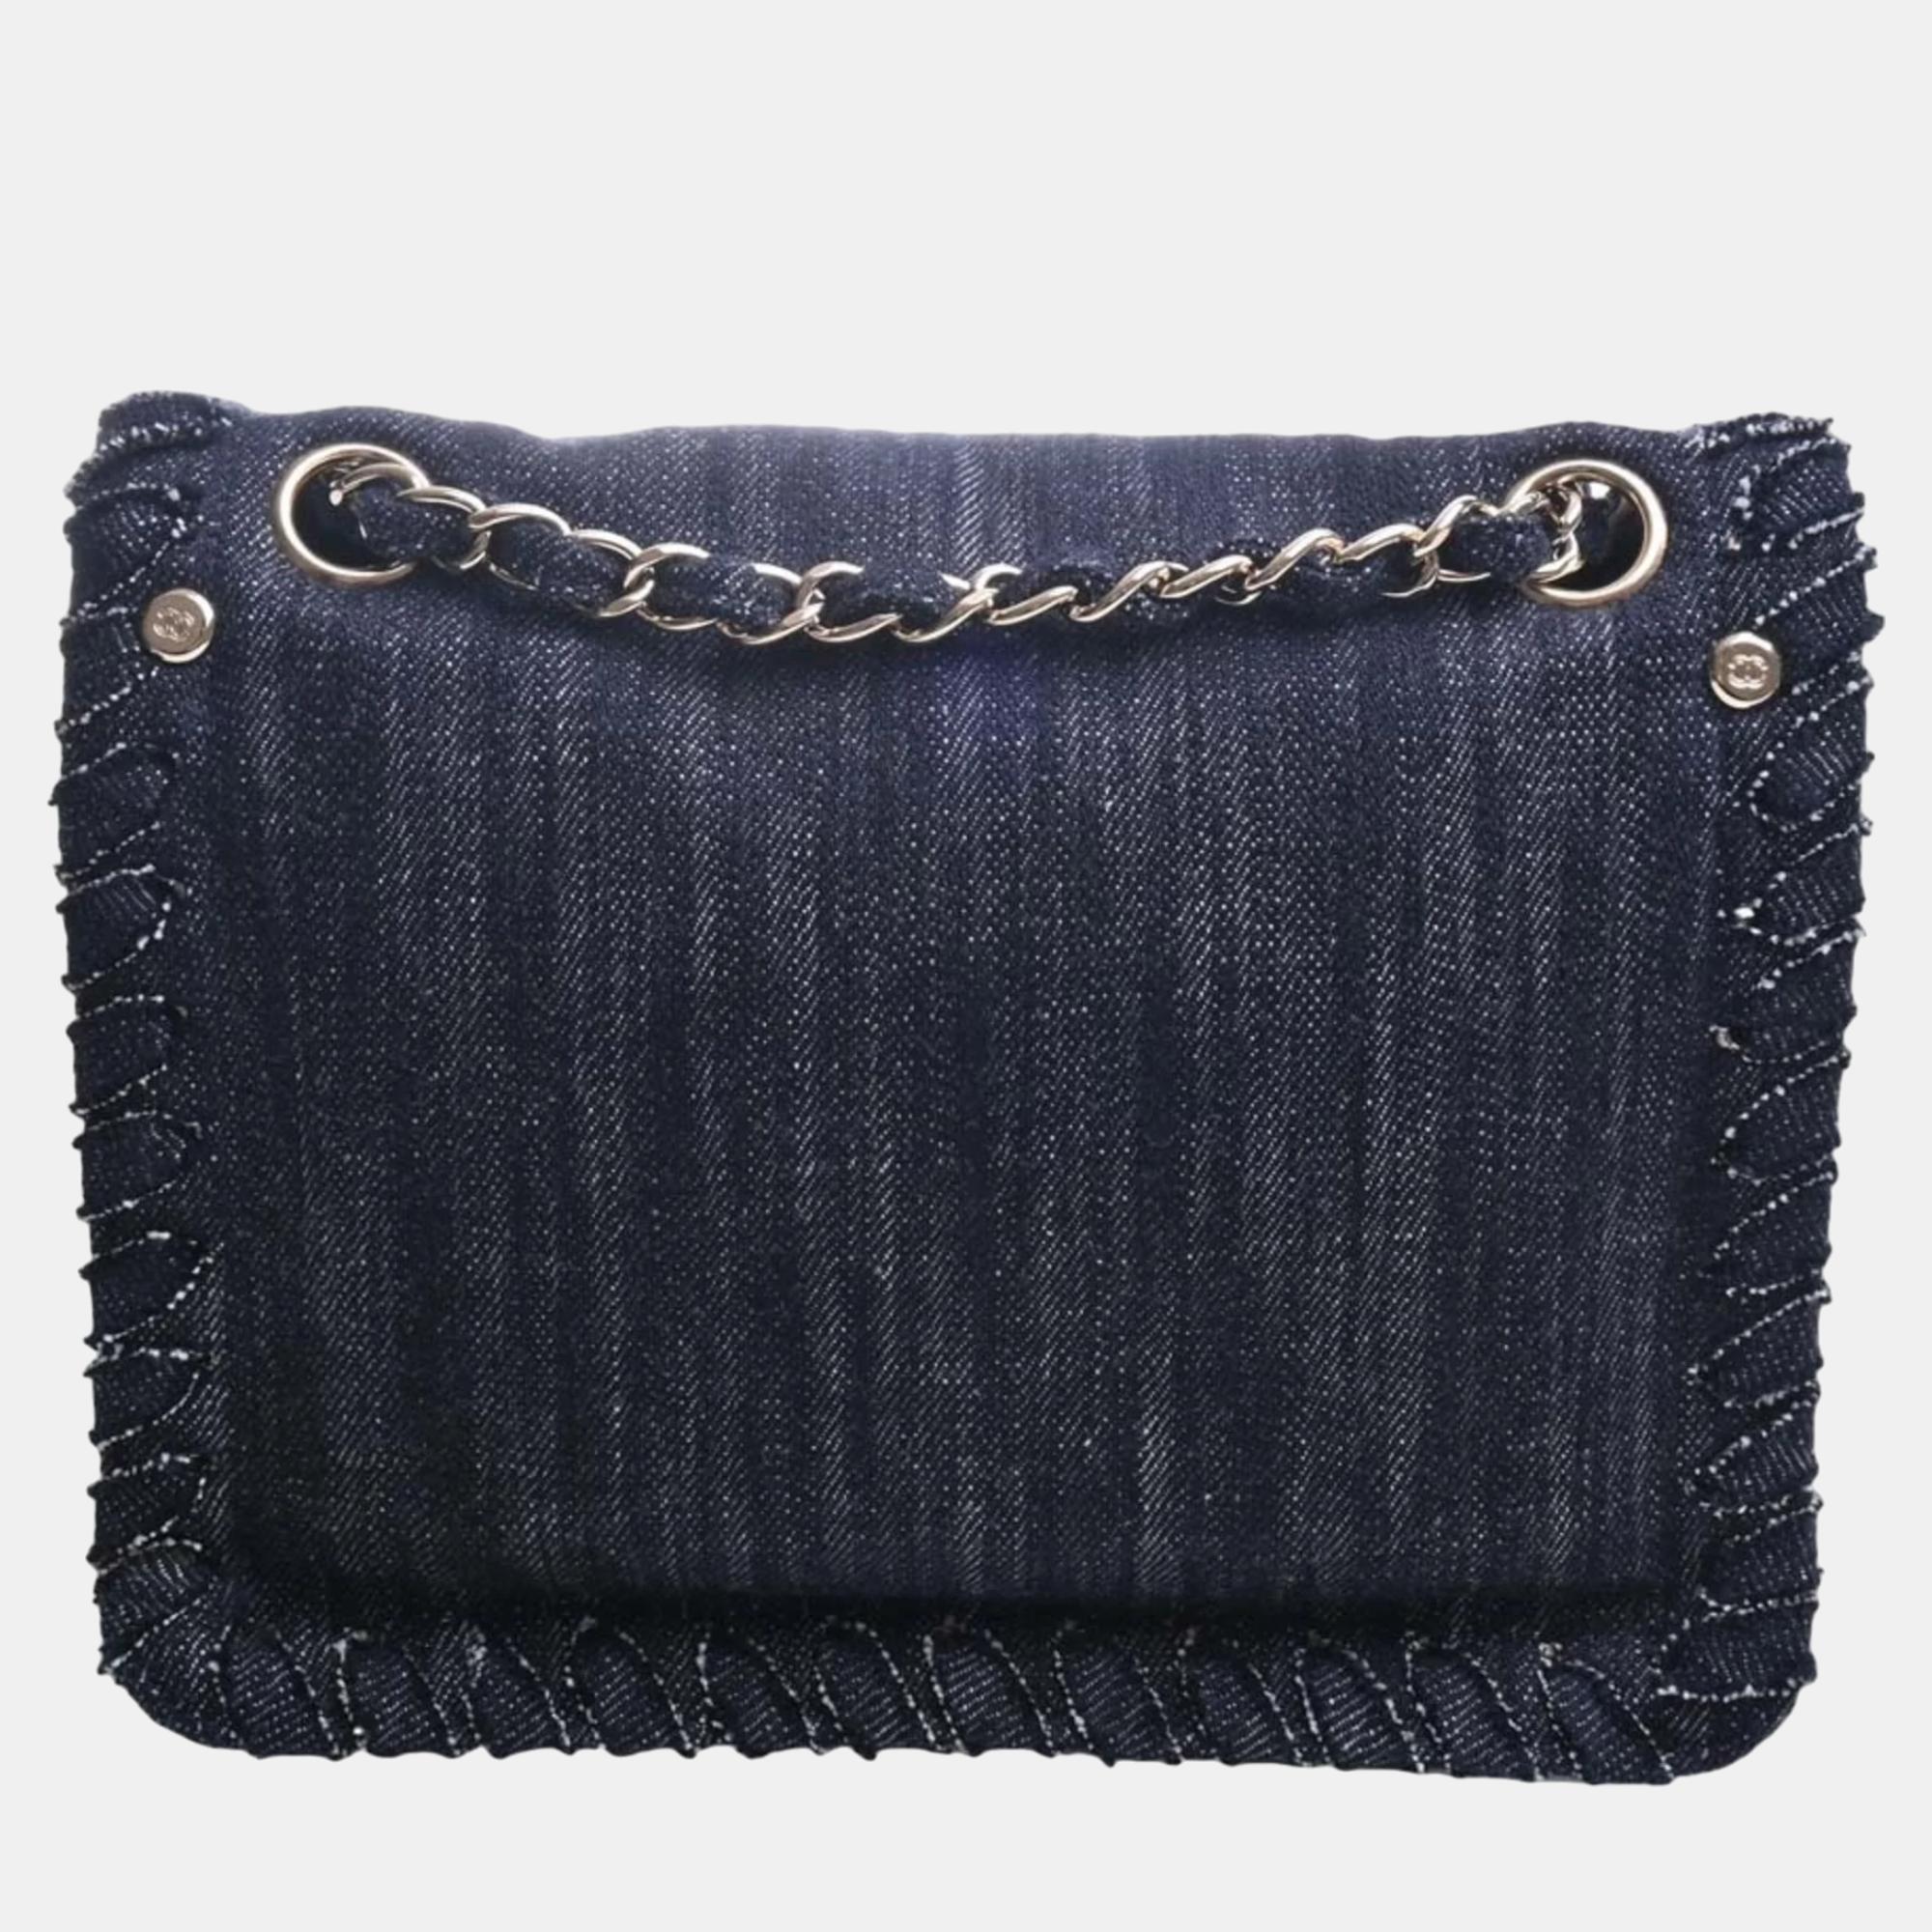 

Chanel Long Rare Vintage Patent Leather Classic Flap Bag Bijoux Chain Bag, Blue